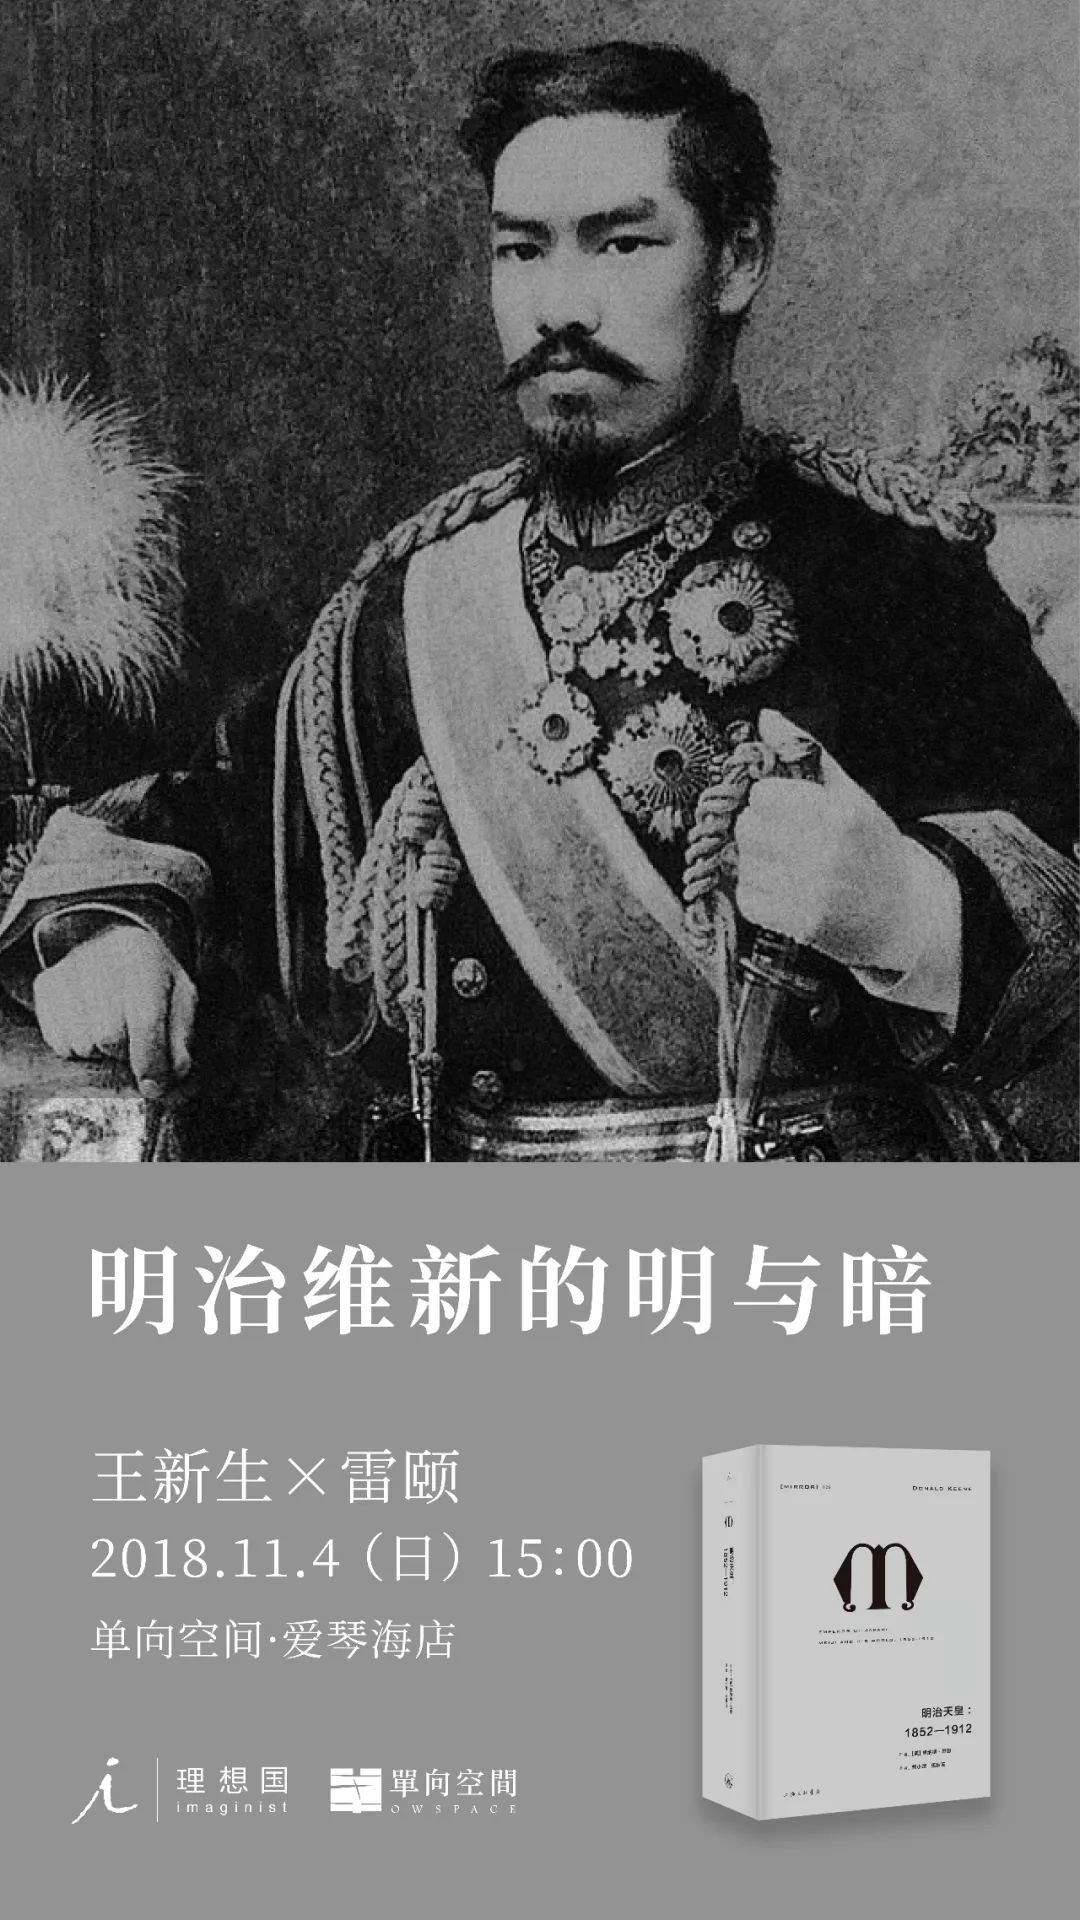 明治维新的明与暗 明治天皇 1852 1912 新书分享会 日本